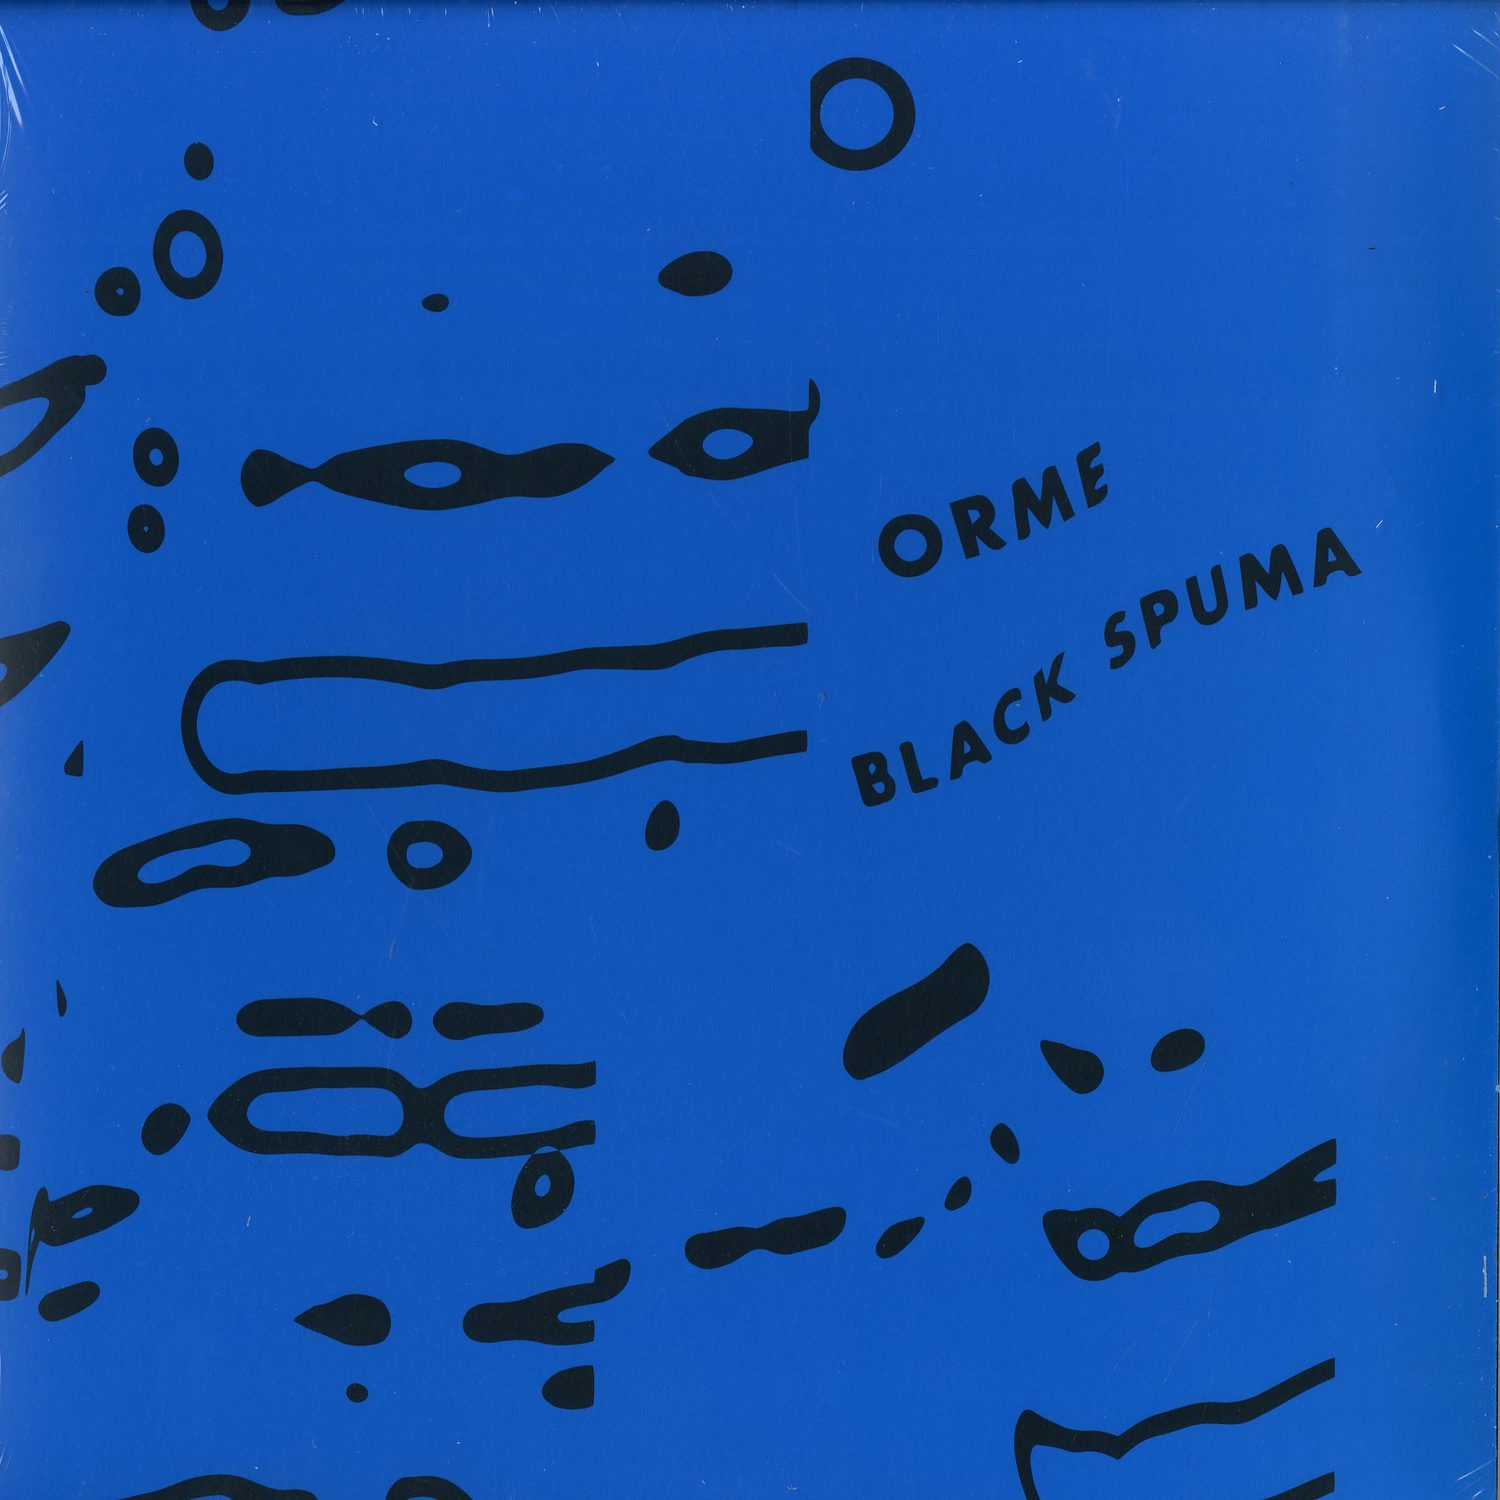 Black Spuma - ORME 